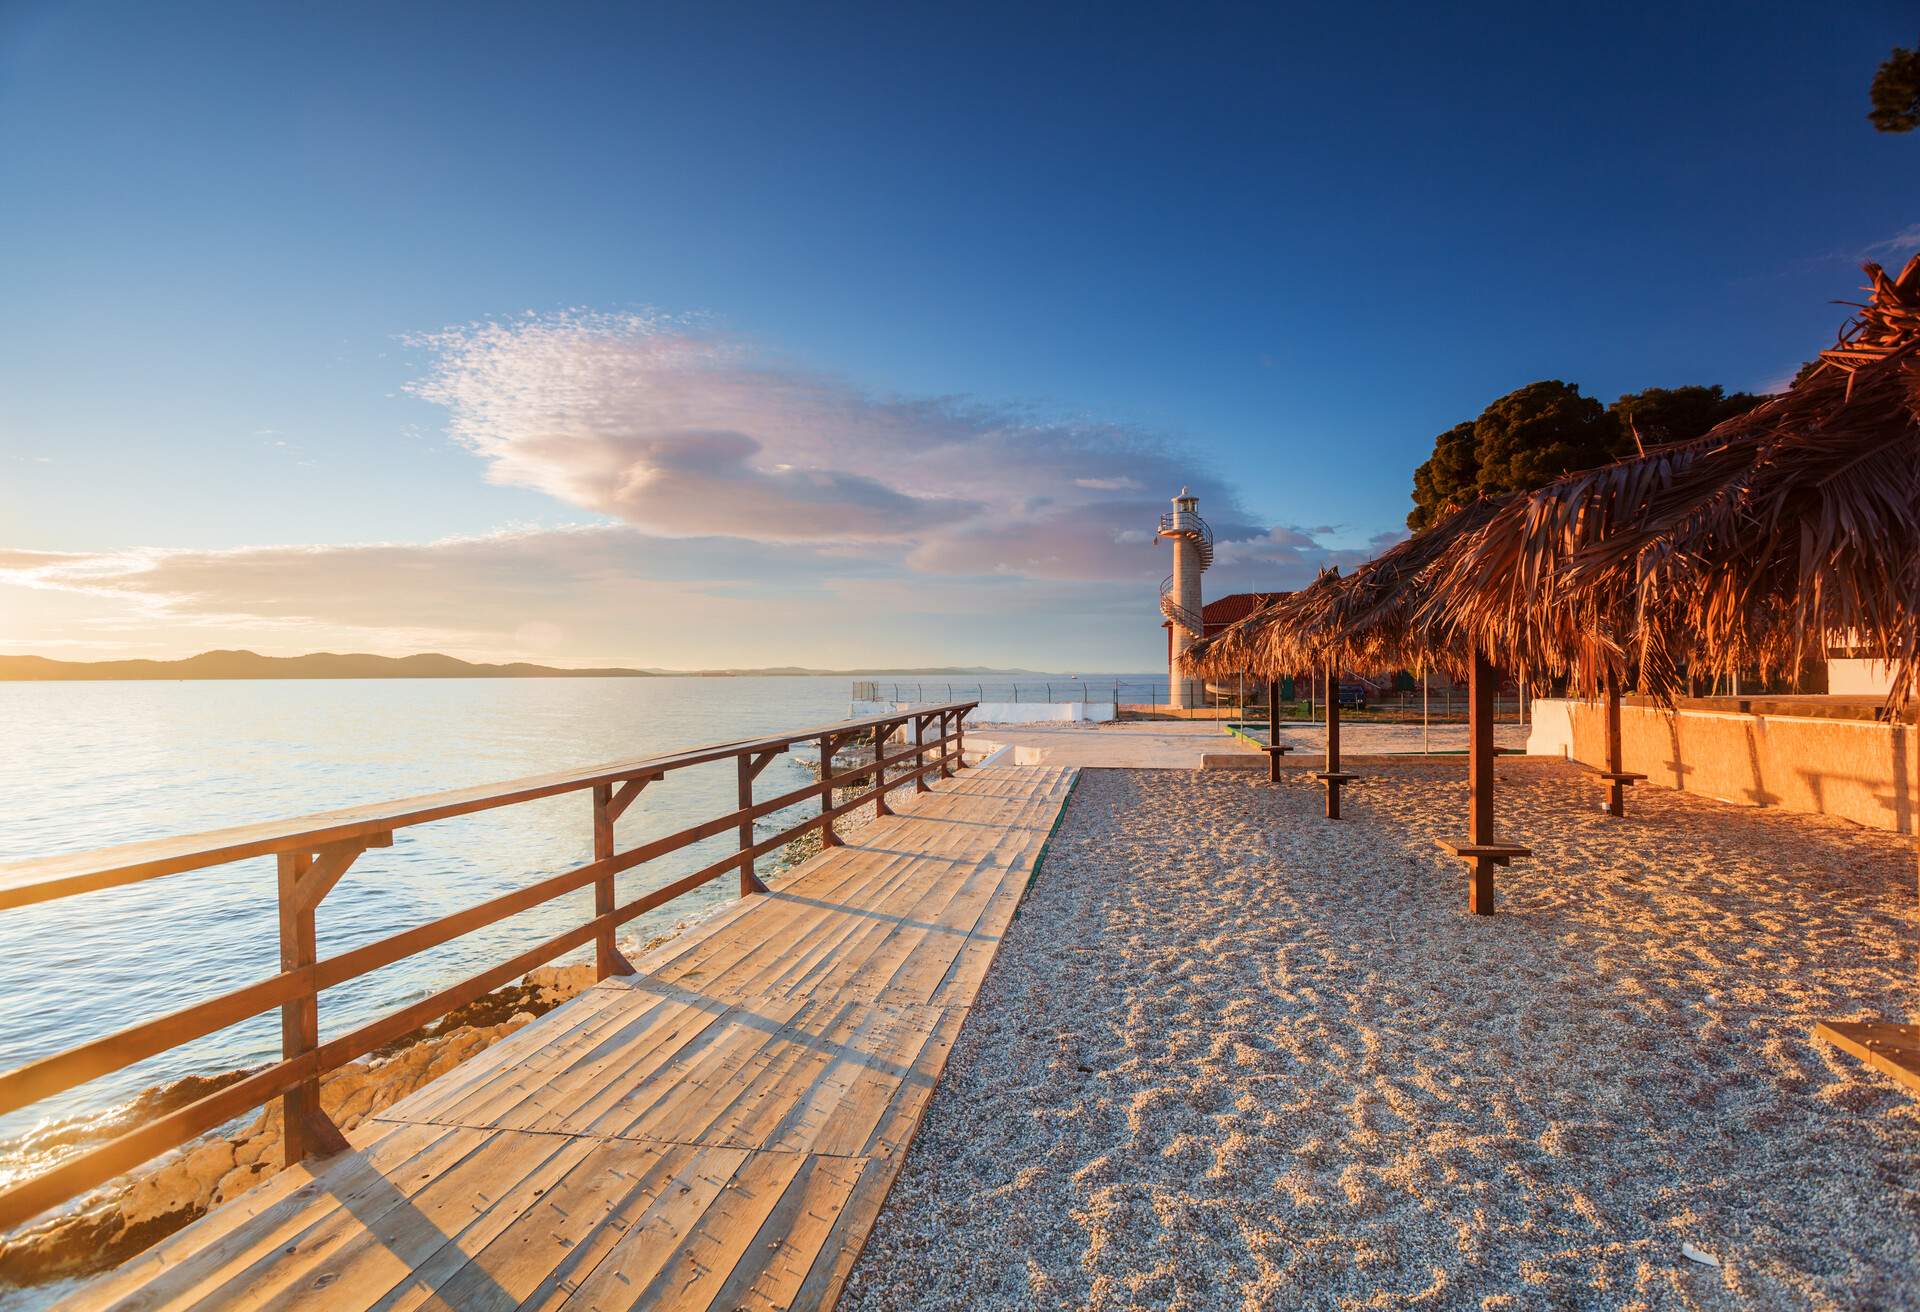 lighthouse in Zadar. Croatia.; Shutterstock ID 149029025